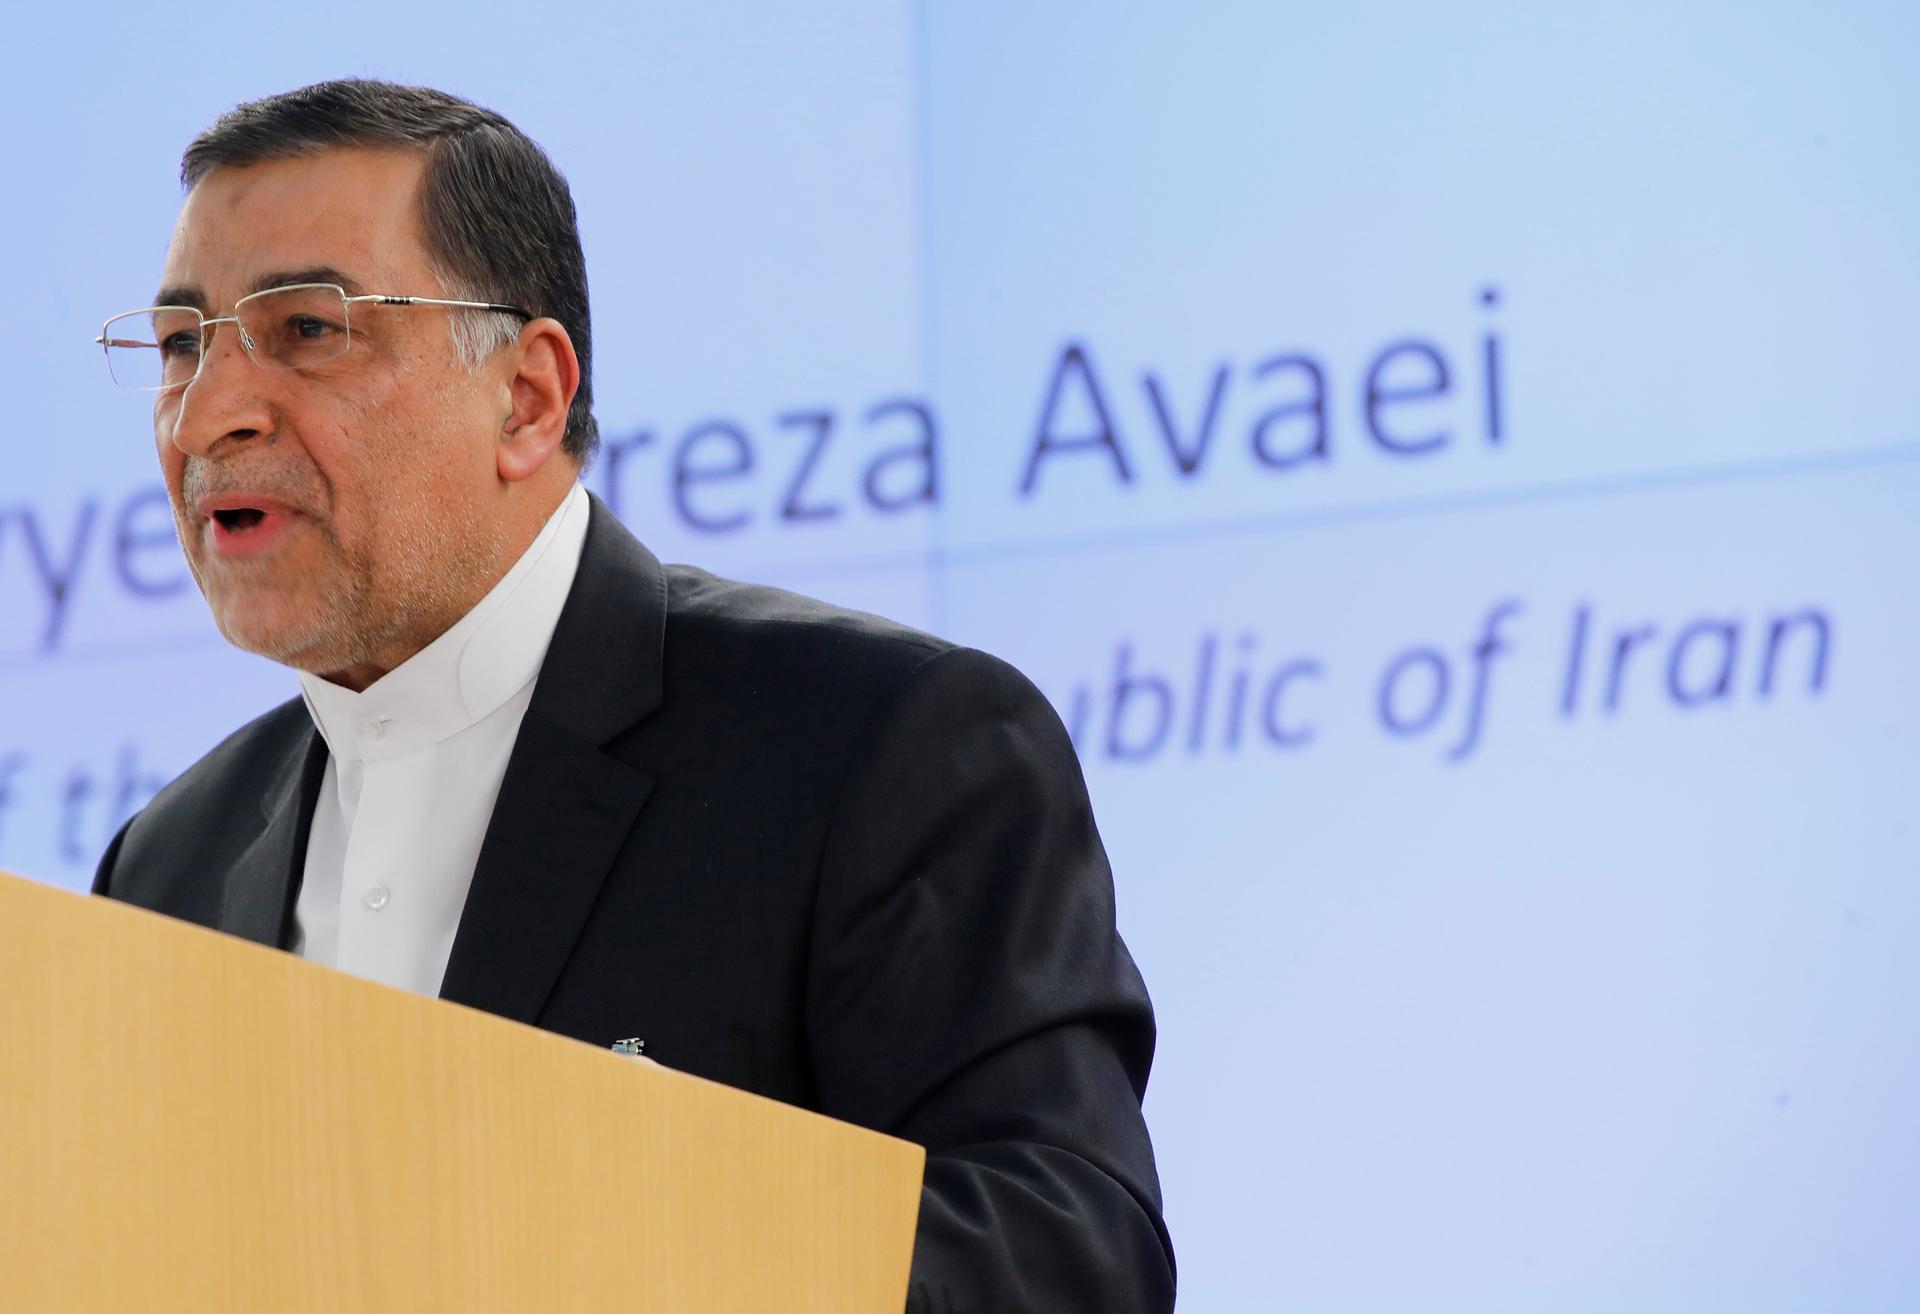 Seyyed Alireza Avaei, Iran's minister of justice